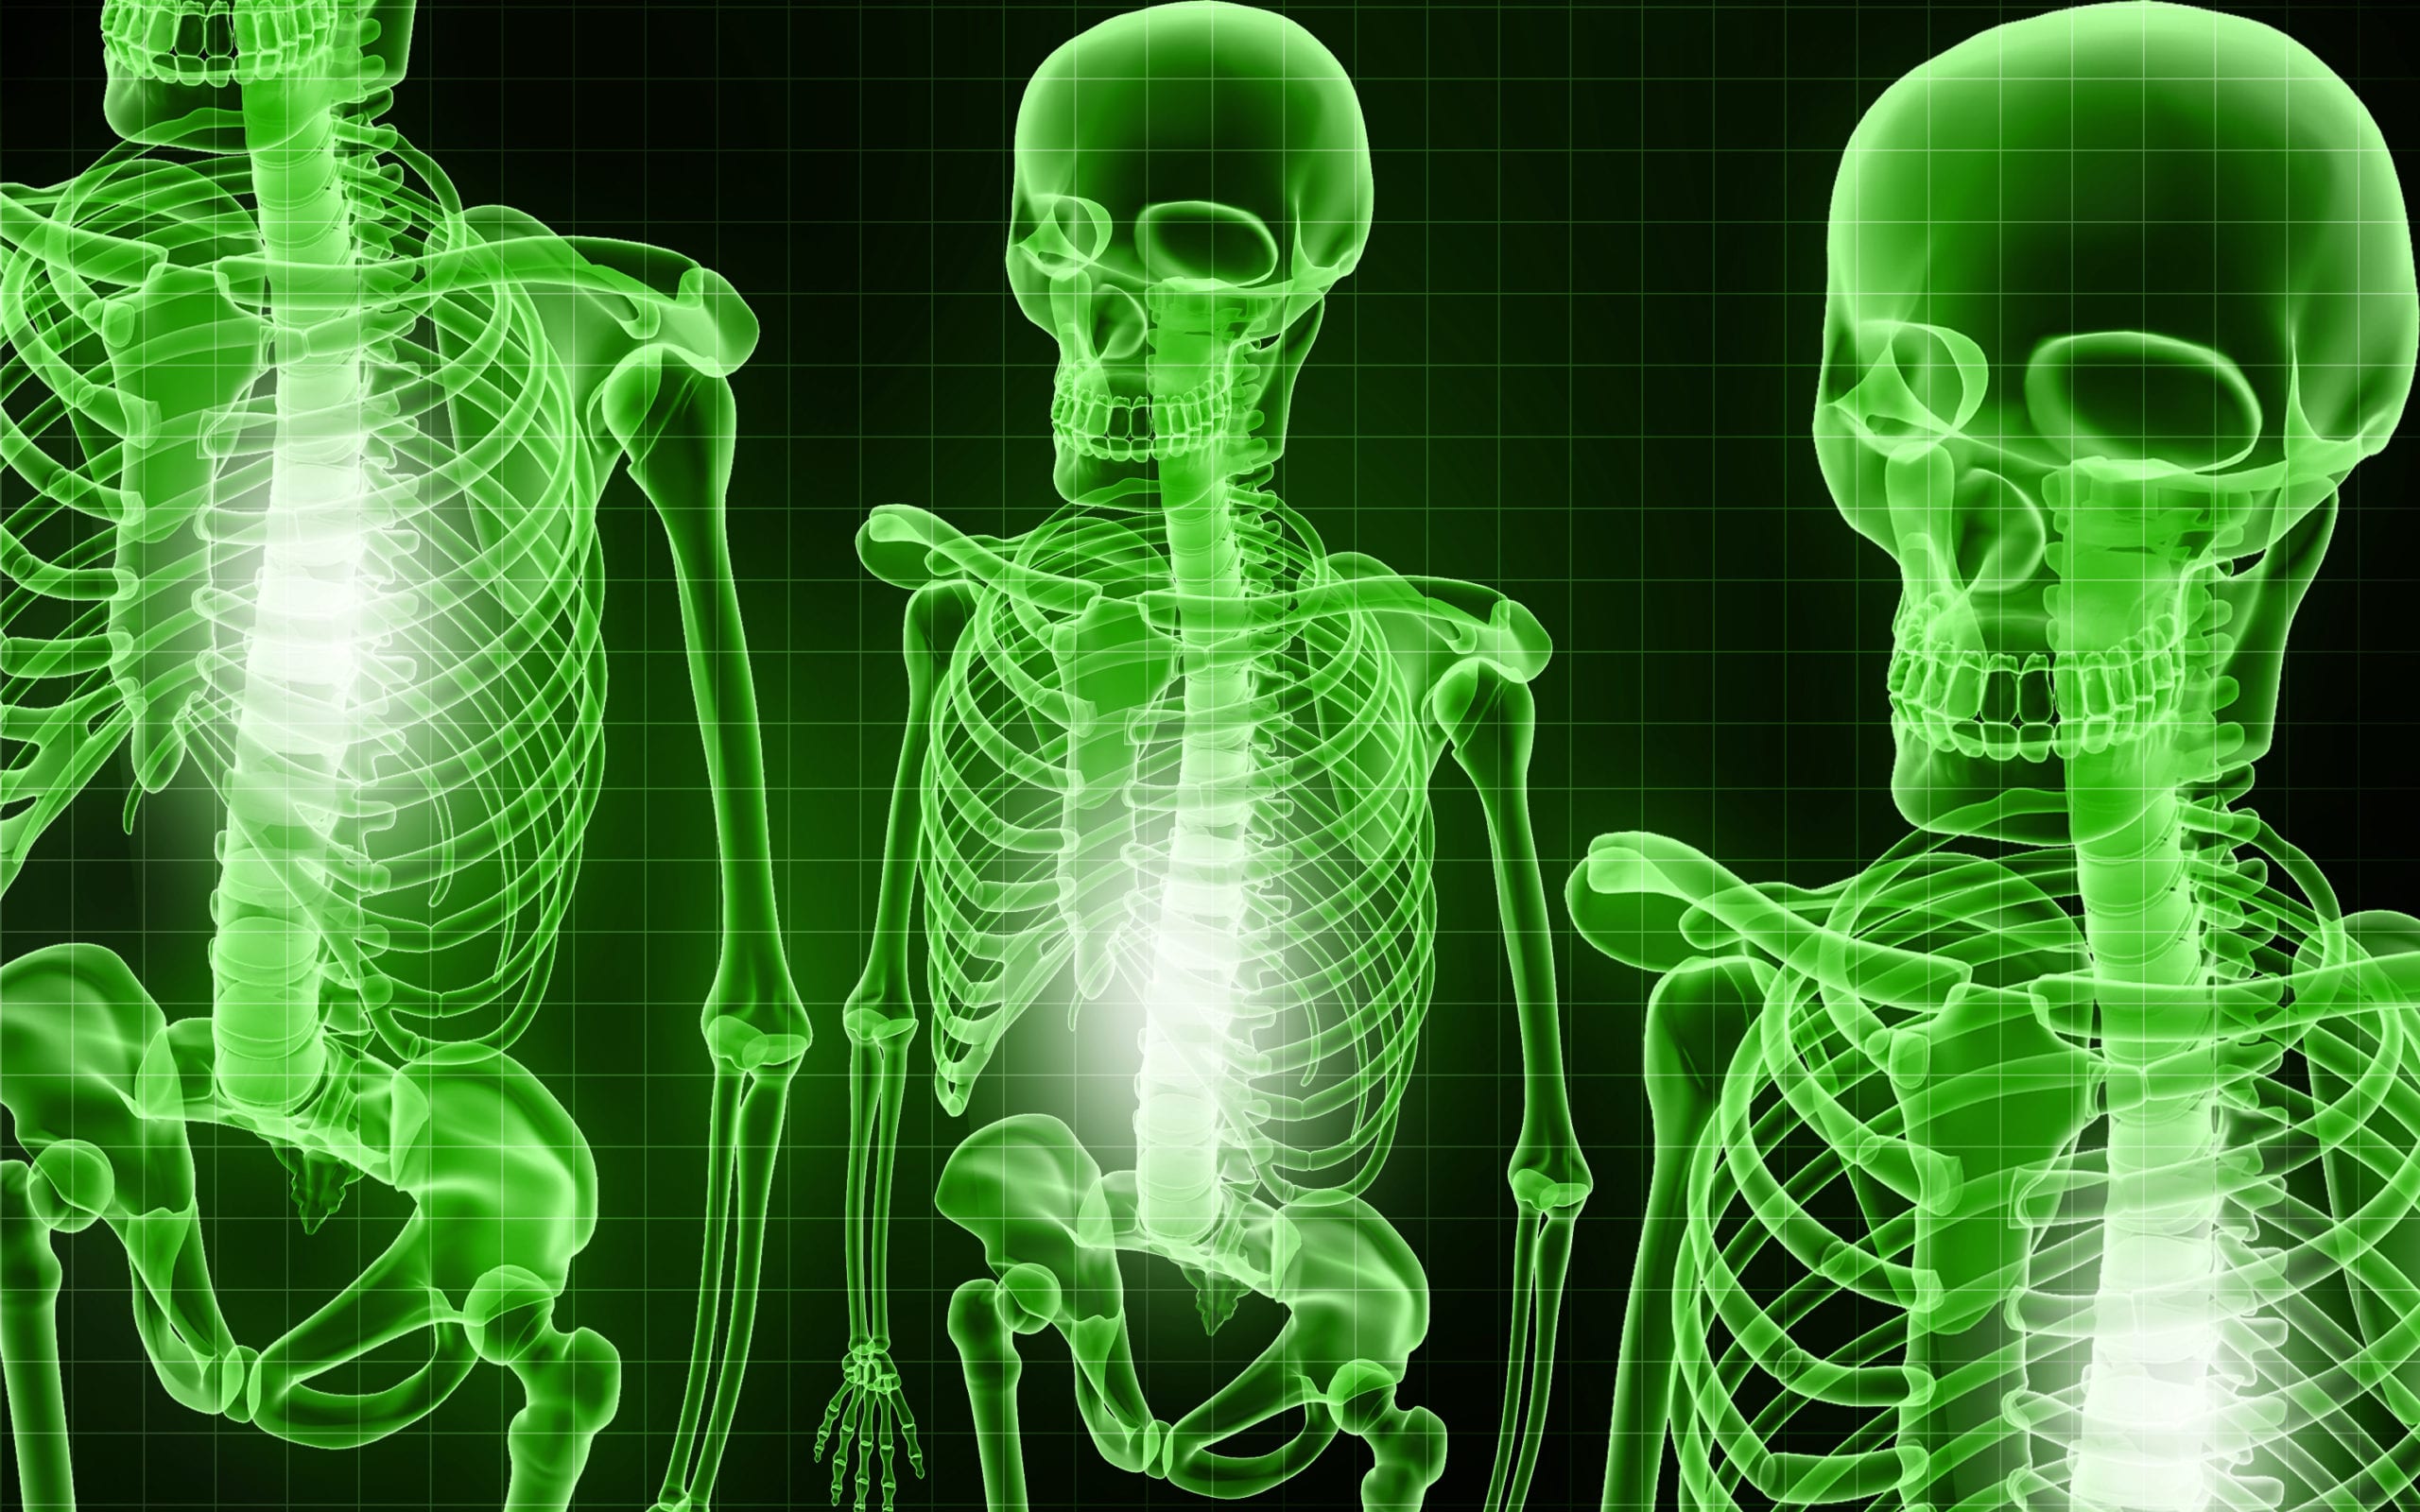 Squelette et maladie des os - consultation médicale par vidéo